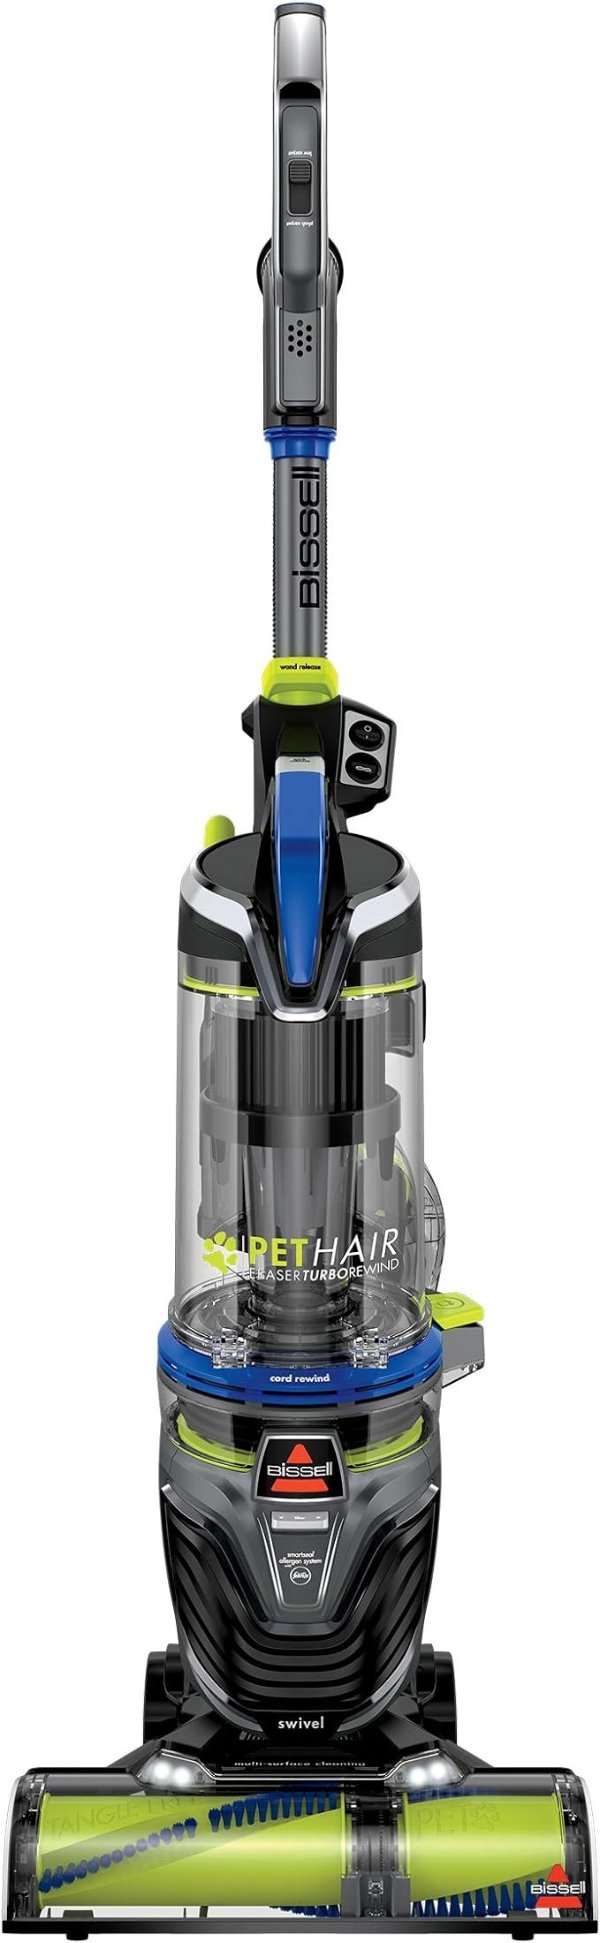 Pet Hair Eraser Turbo Rewind Upright Vacuum Cleaner, 27909, Blue